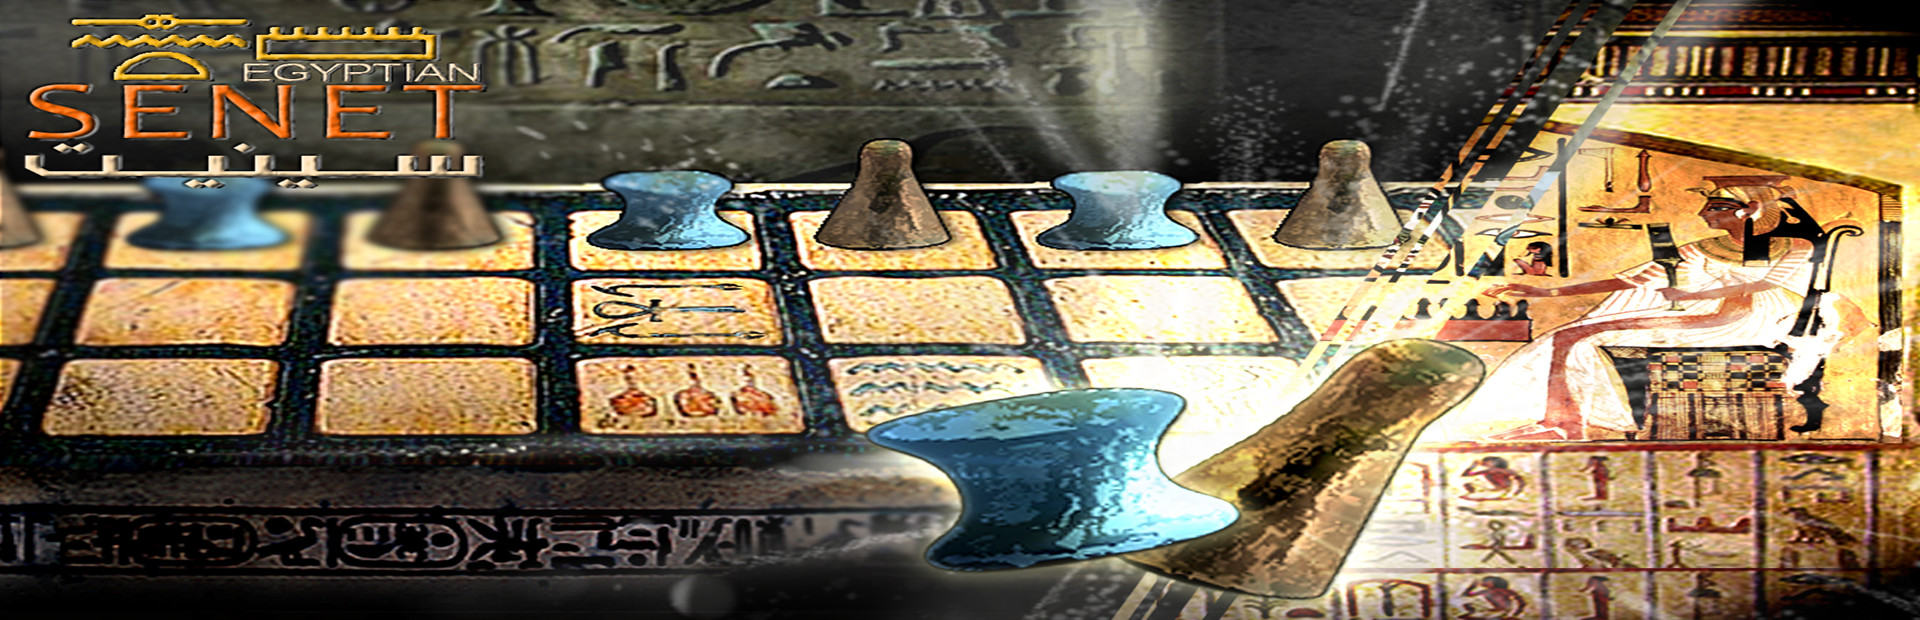 Egyptian Senet cover image